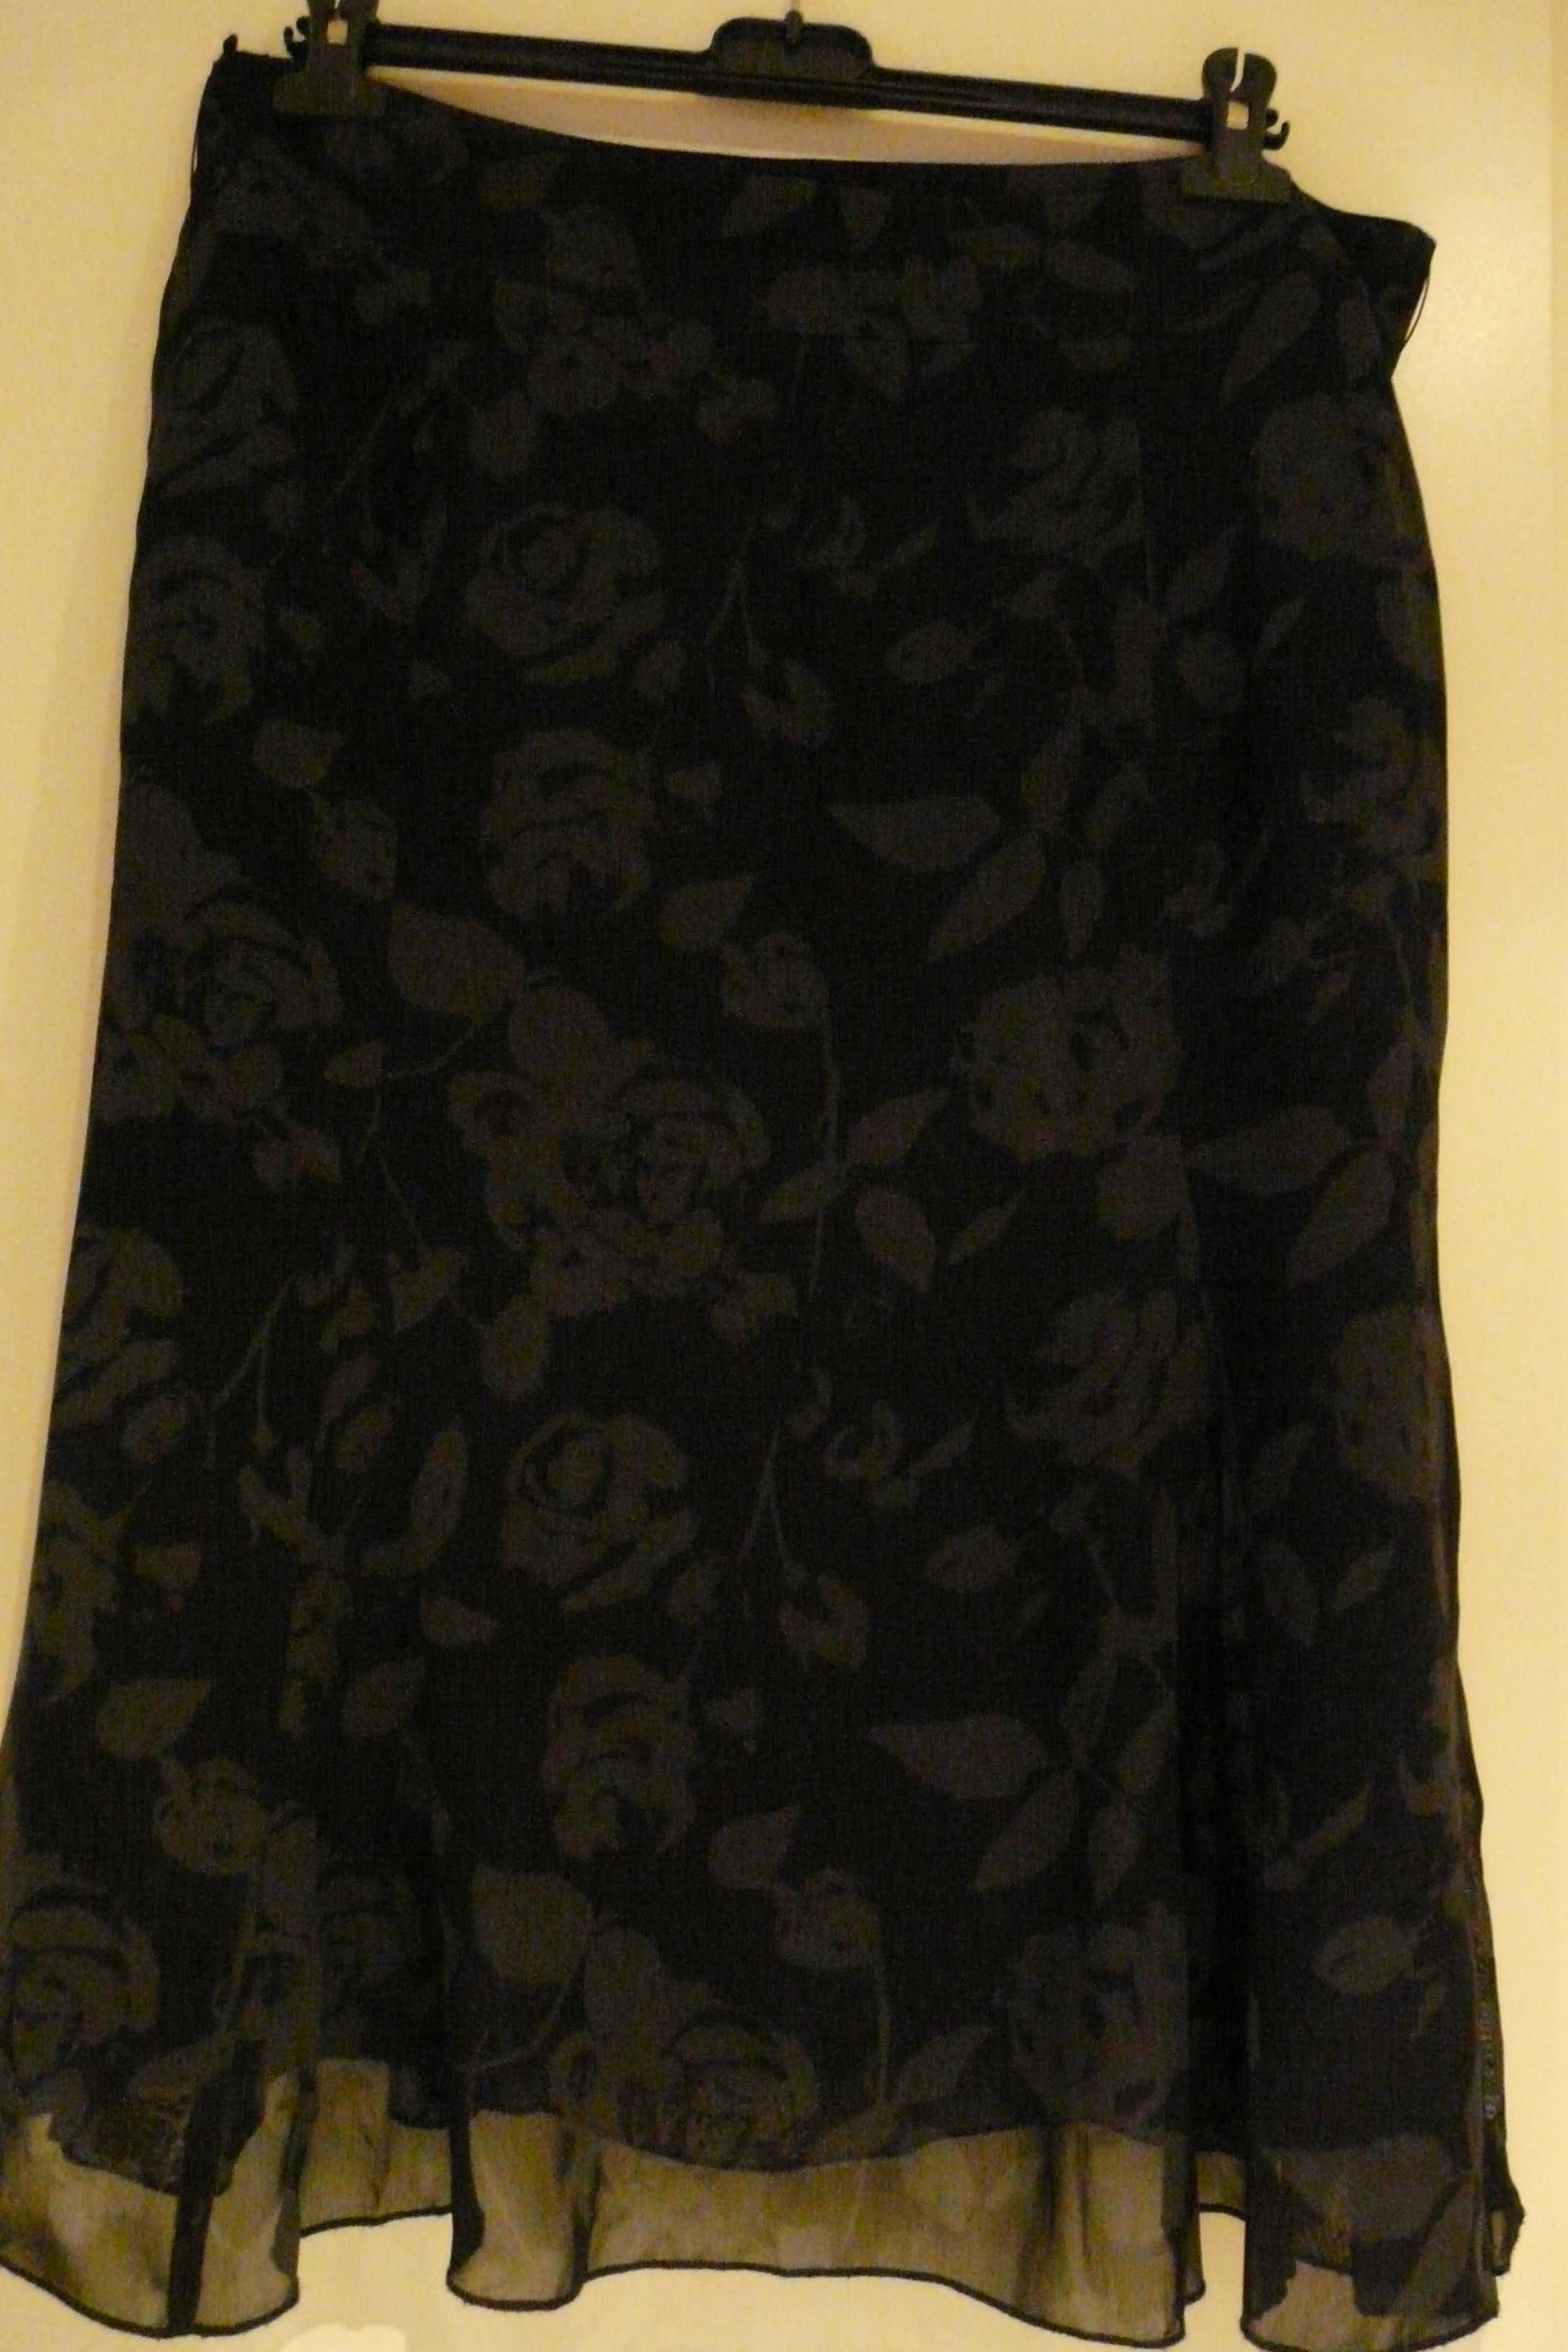 Spódnica H&M, czarna, trapezowa, 100% wiskoza, r. 44.